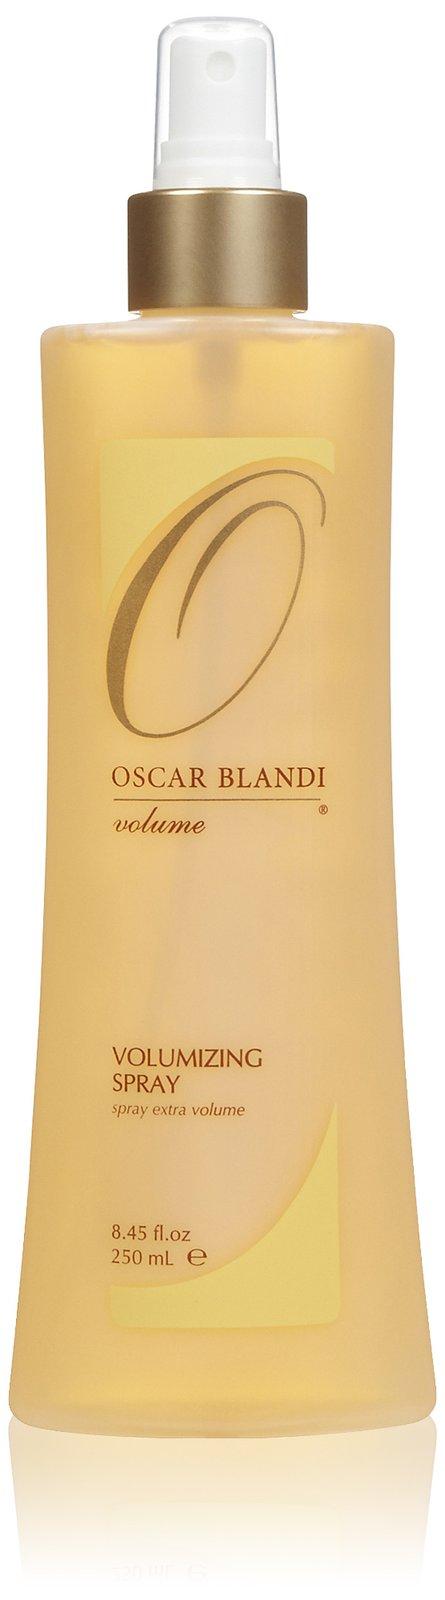 Oscar Blandi Volume Volumizing Spray